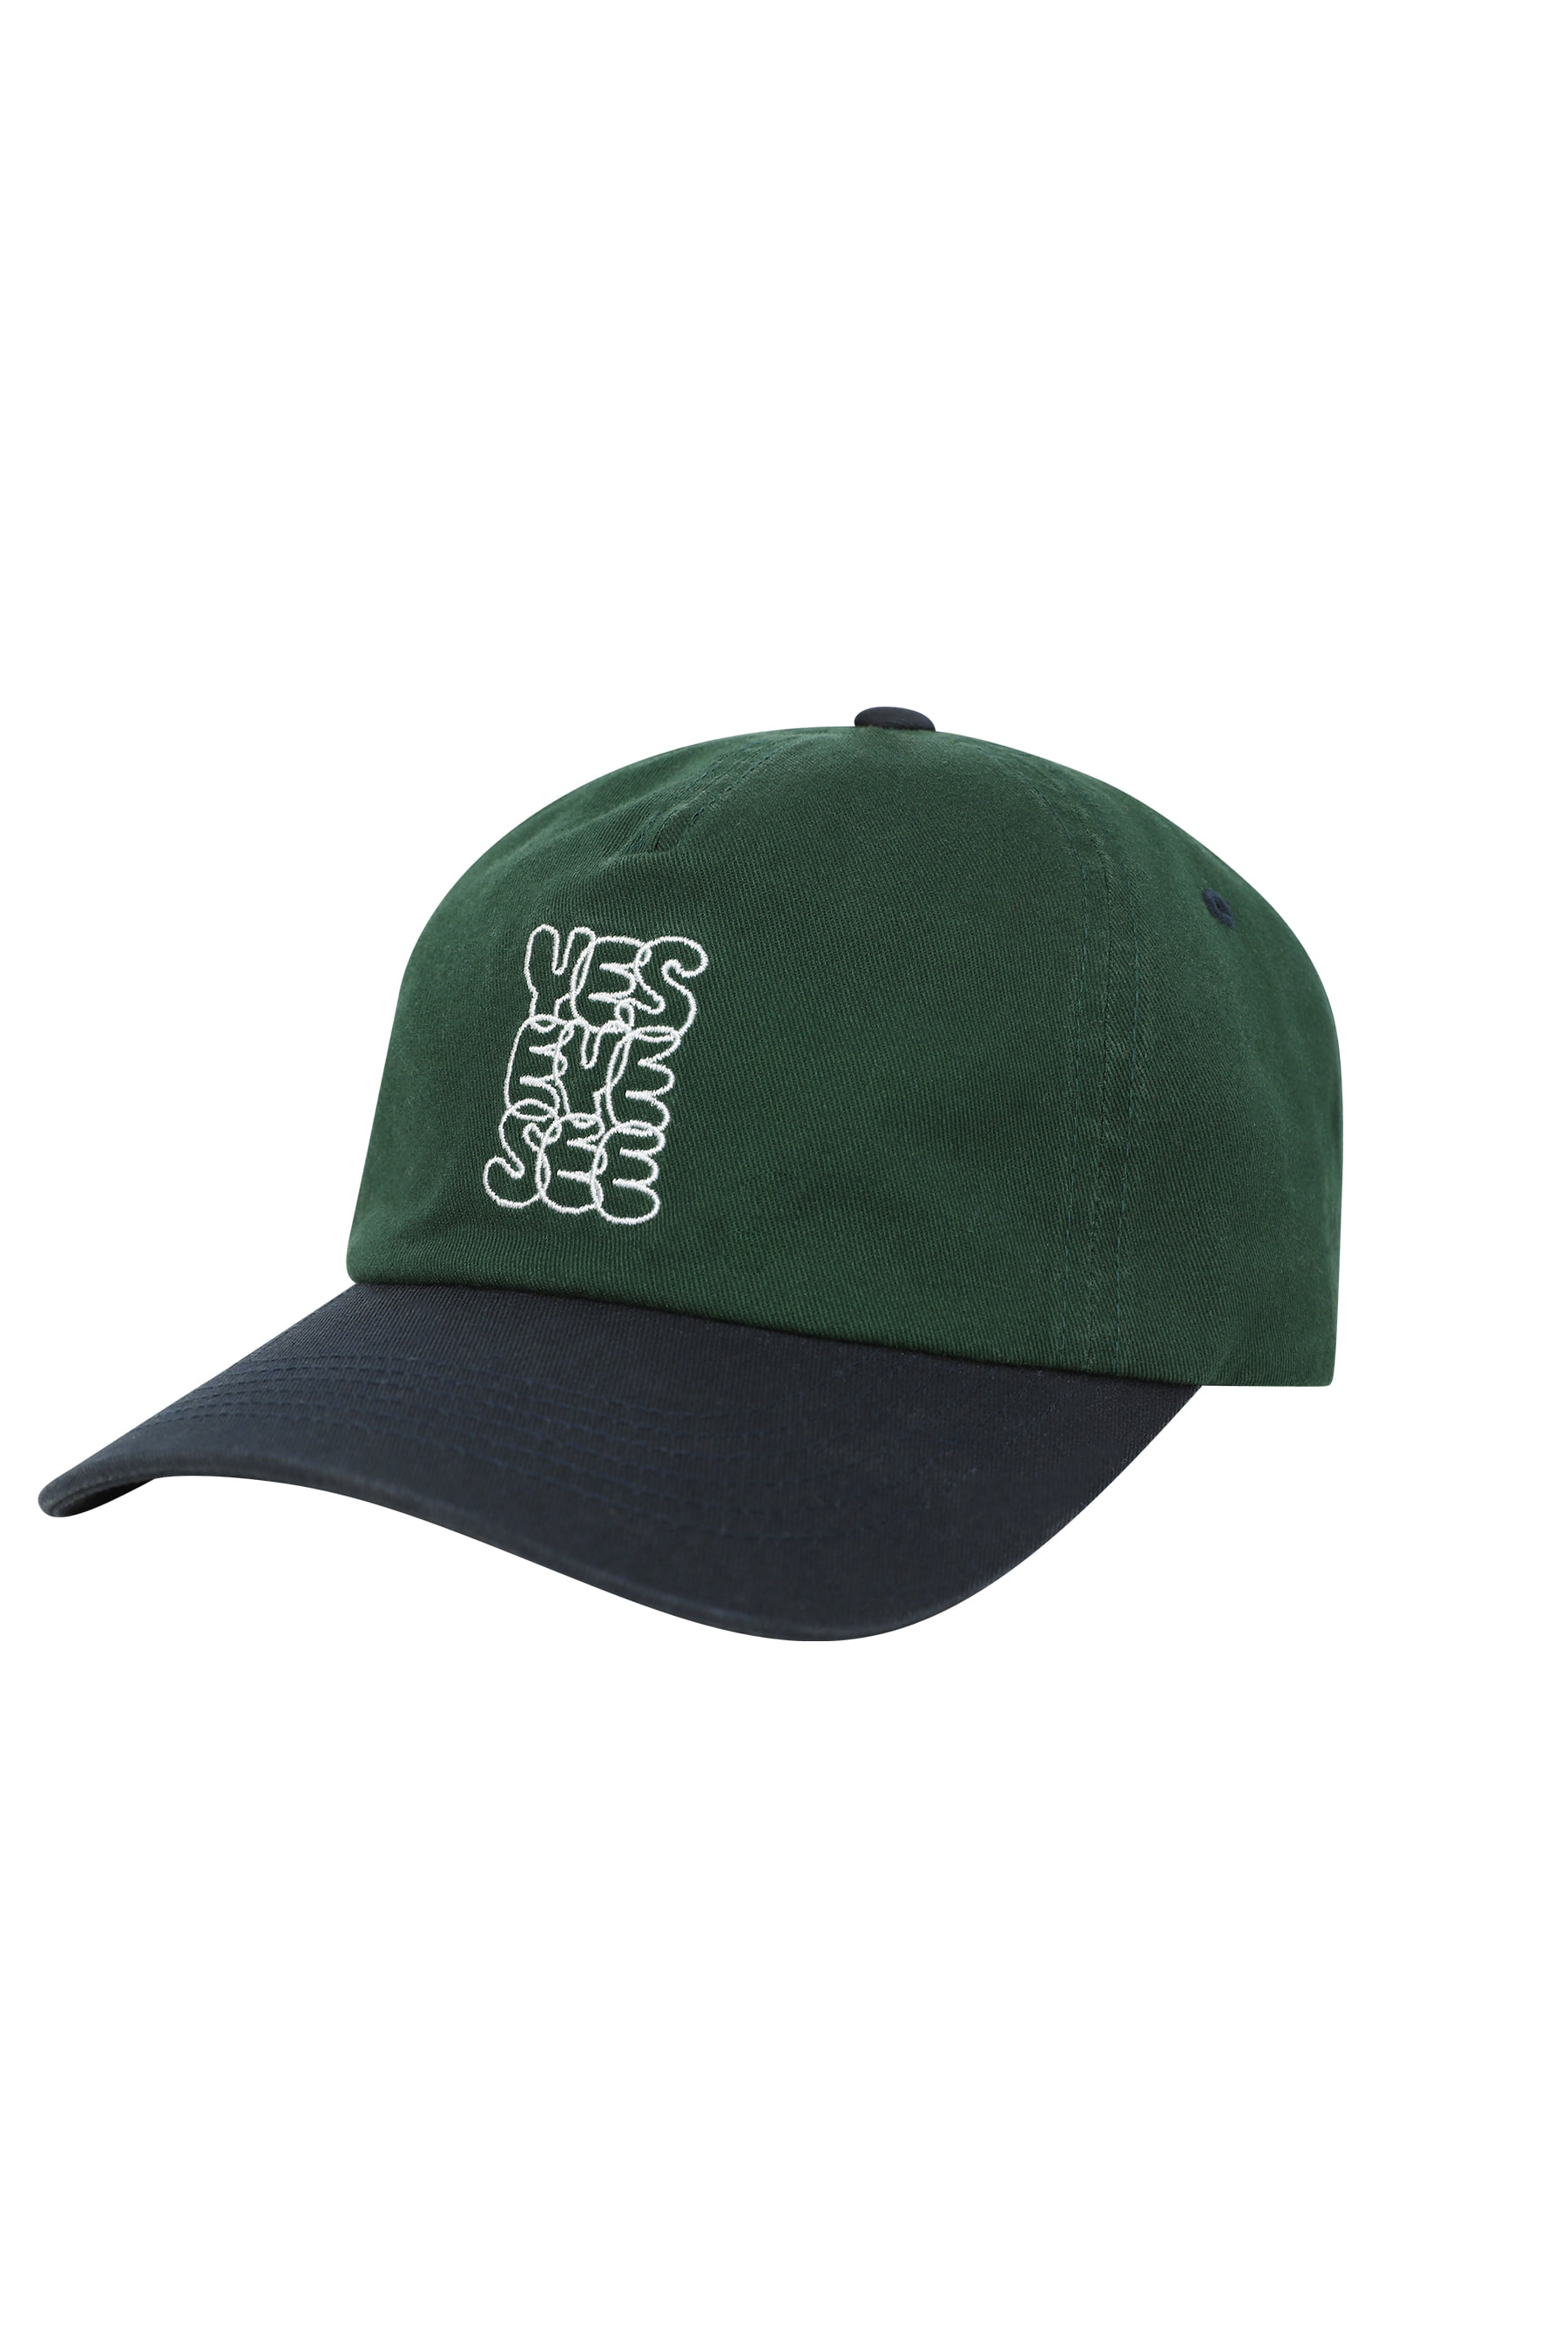 Y.E.S Logo Cap Green/Navy